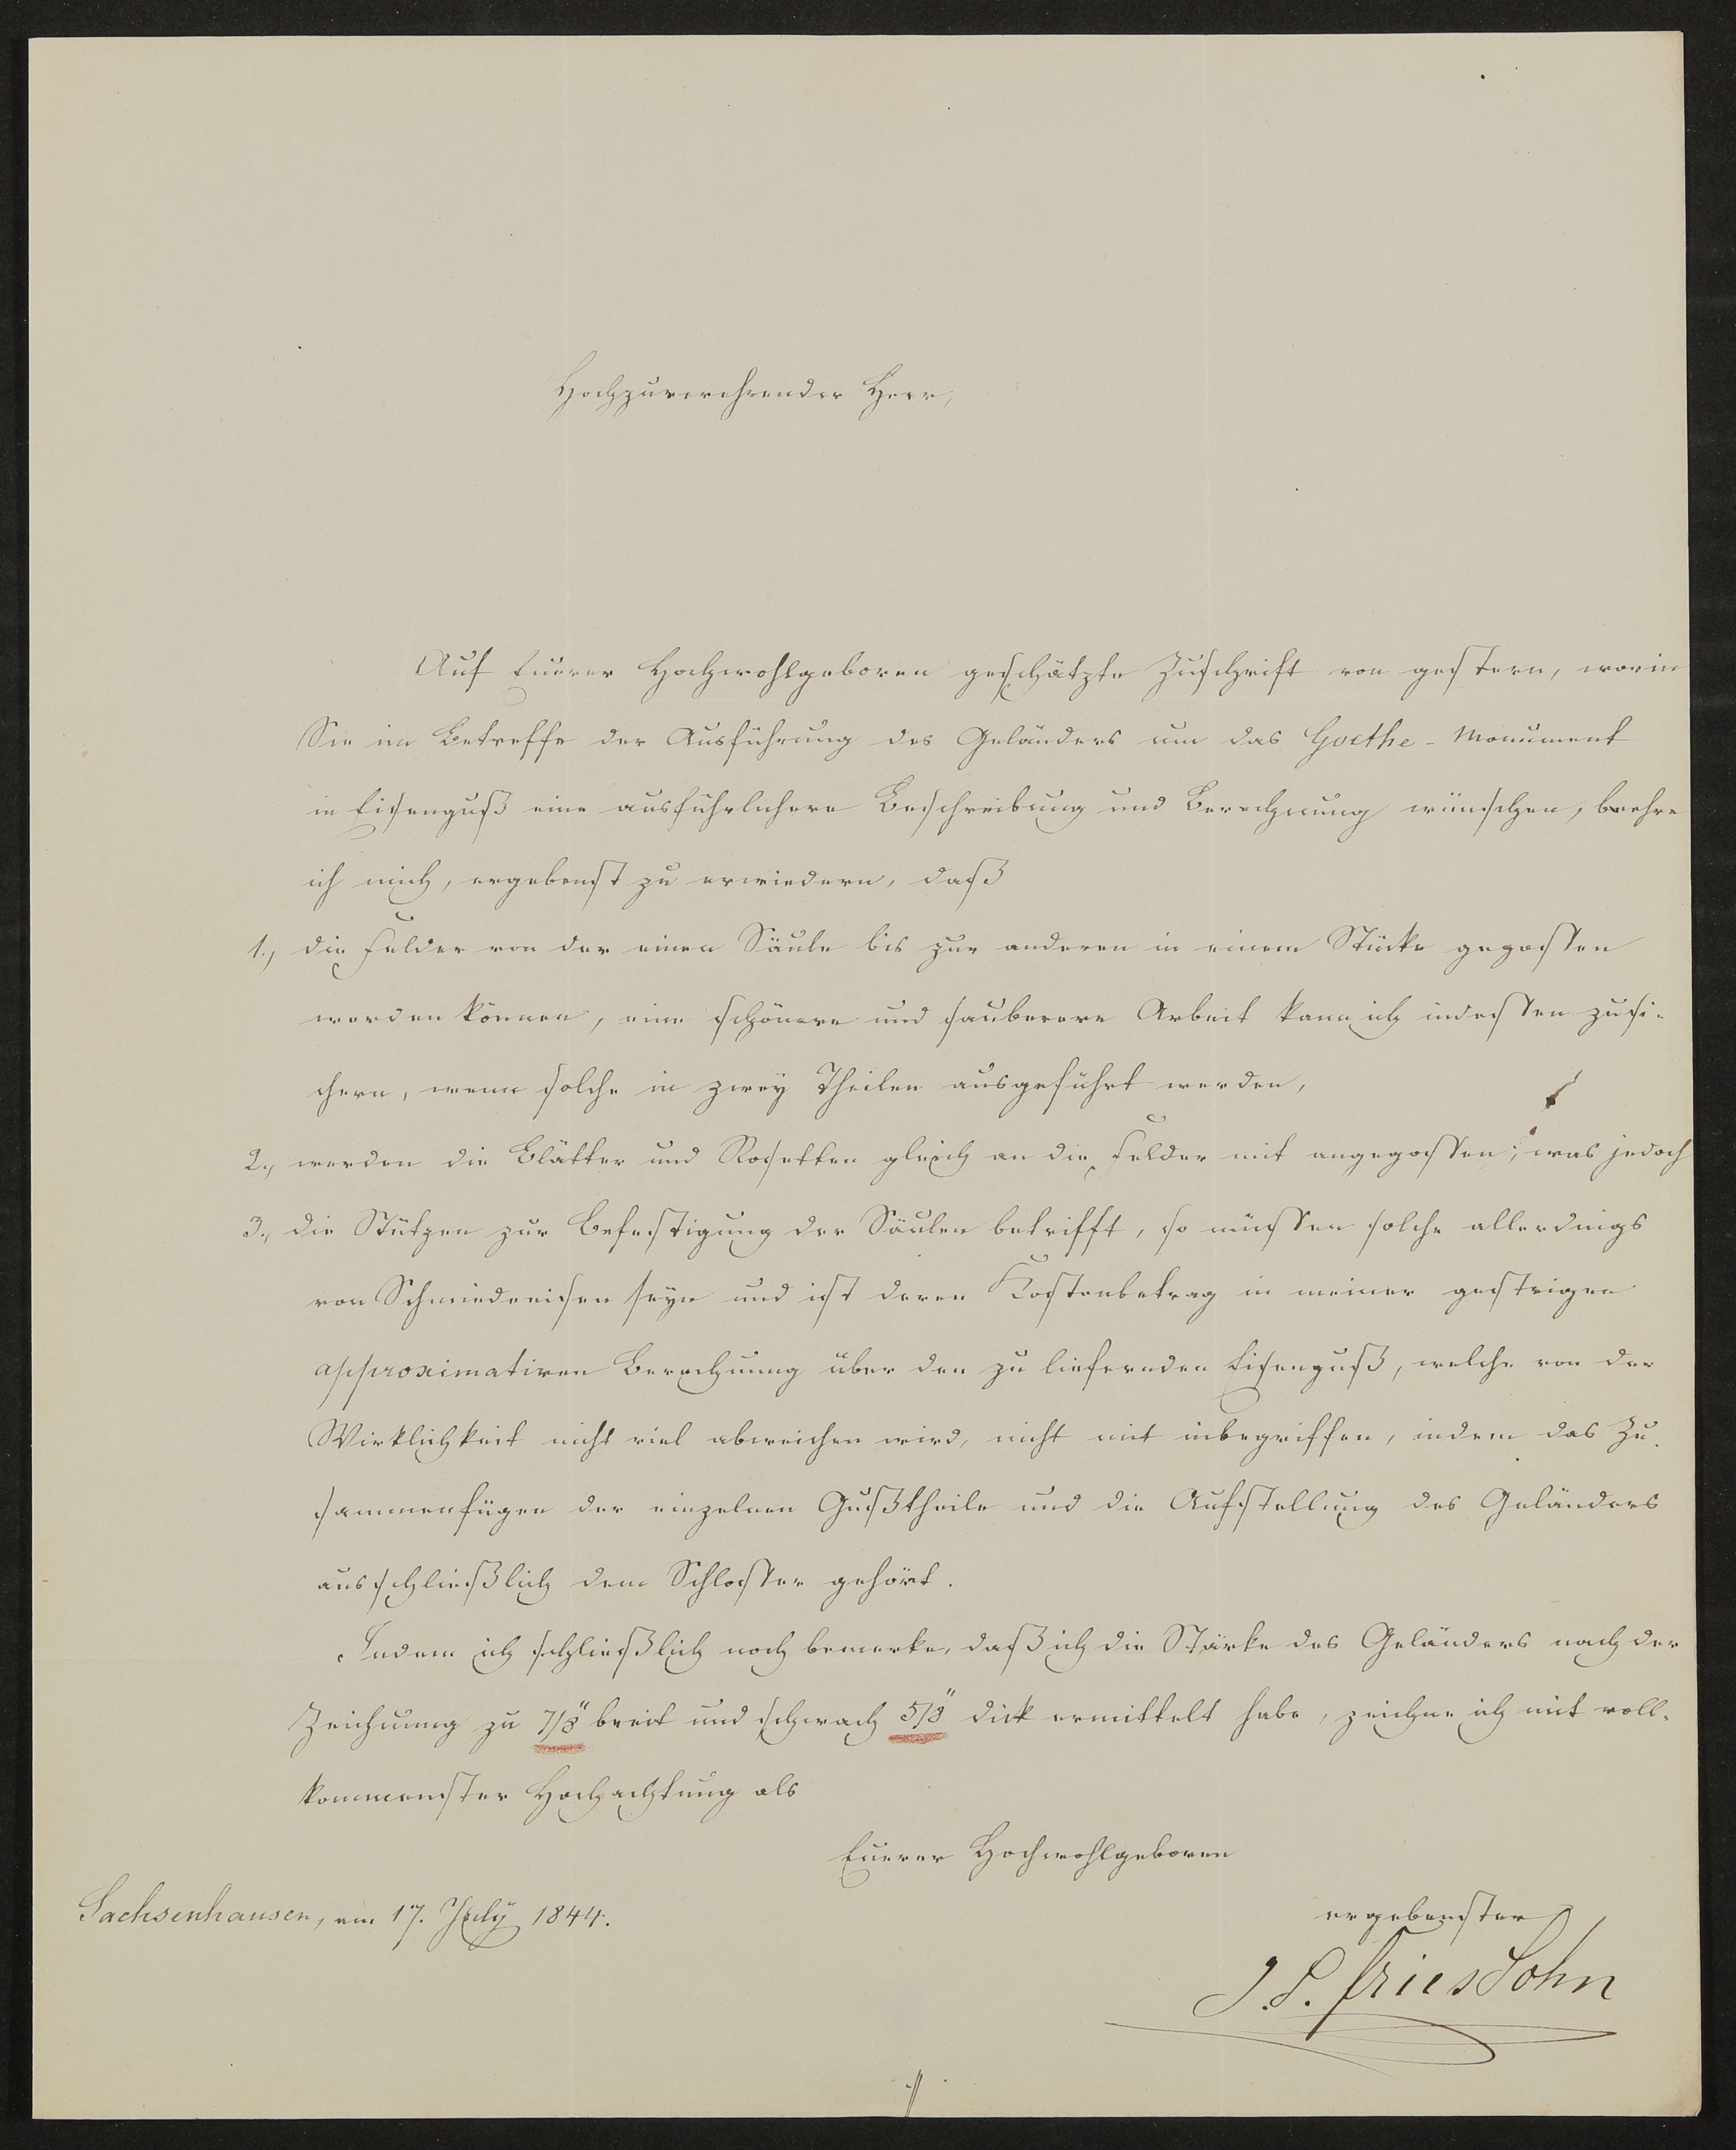 Brief von J.S. Fries an Georg von St. George vom 17.07.1844 (Freies Deutsches Hochstift / Frankfurter Goethe-Museum Public Domain Mark)